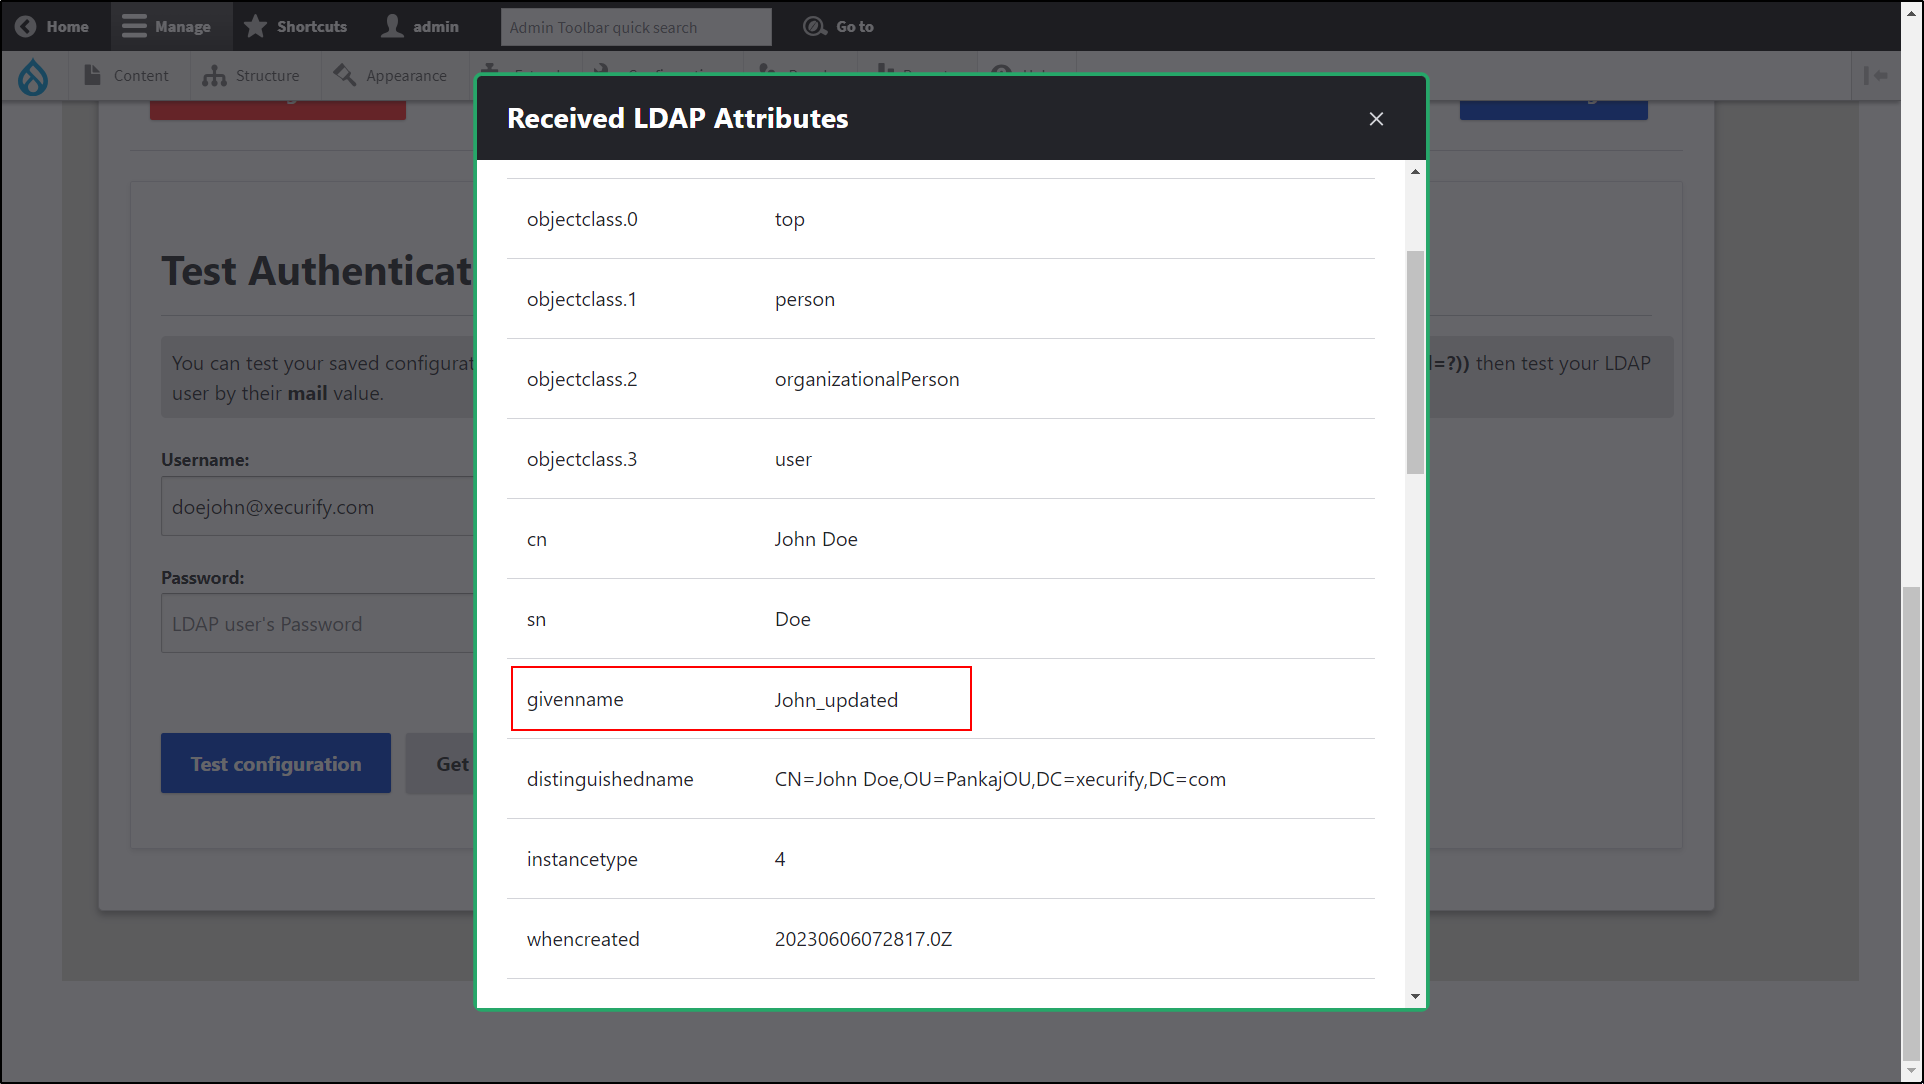 Integración de Drupal LDAP/Active Directory: la siguiente información de usuario, nombre principal de usuario y melena dada, se han actualizado en los campos indicados en la ventana emergente Atributo LDAP recibido.